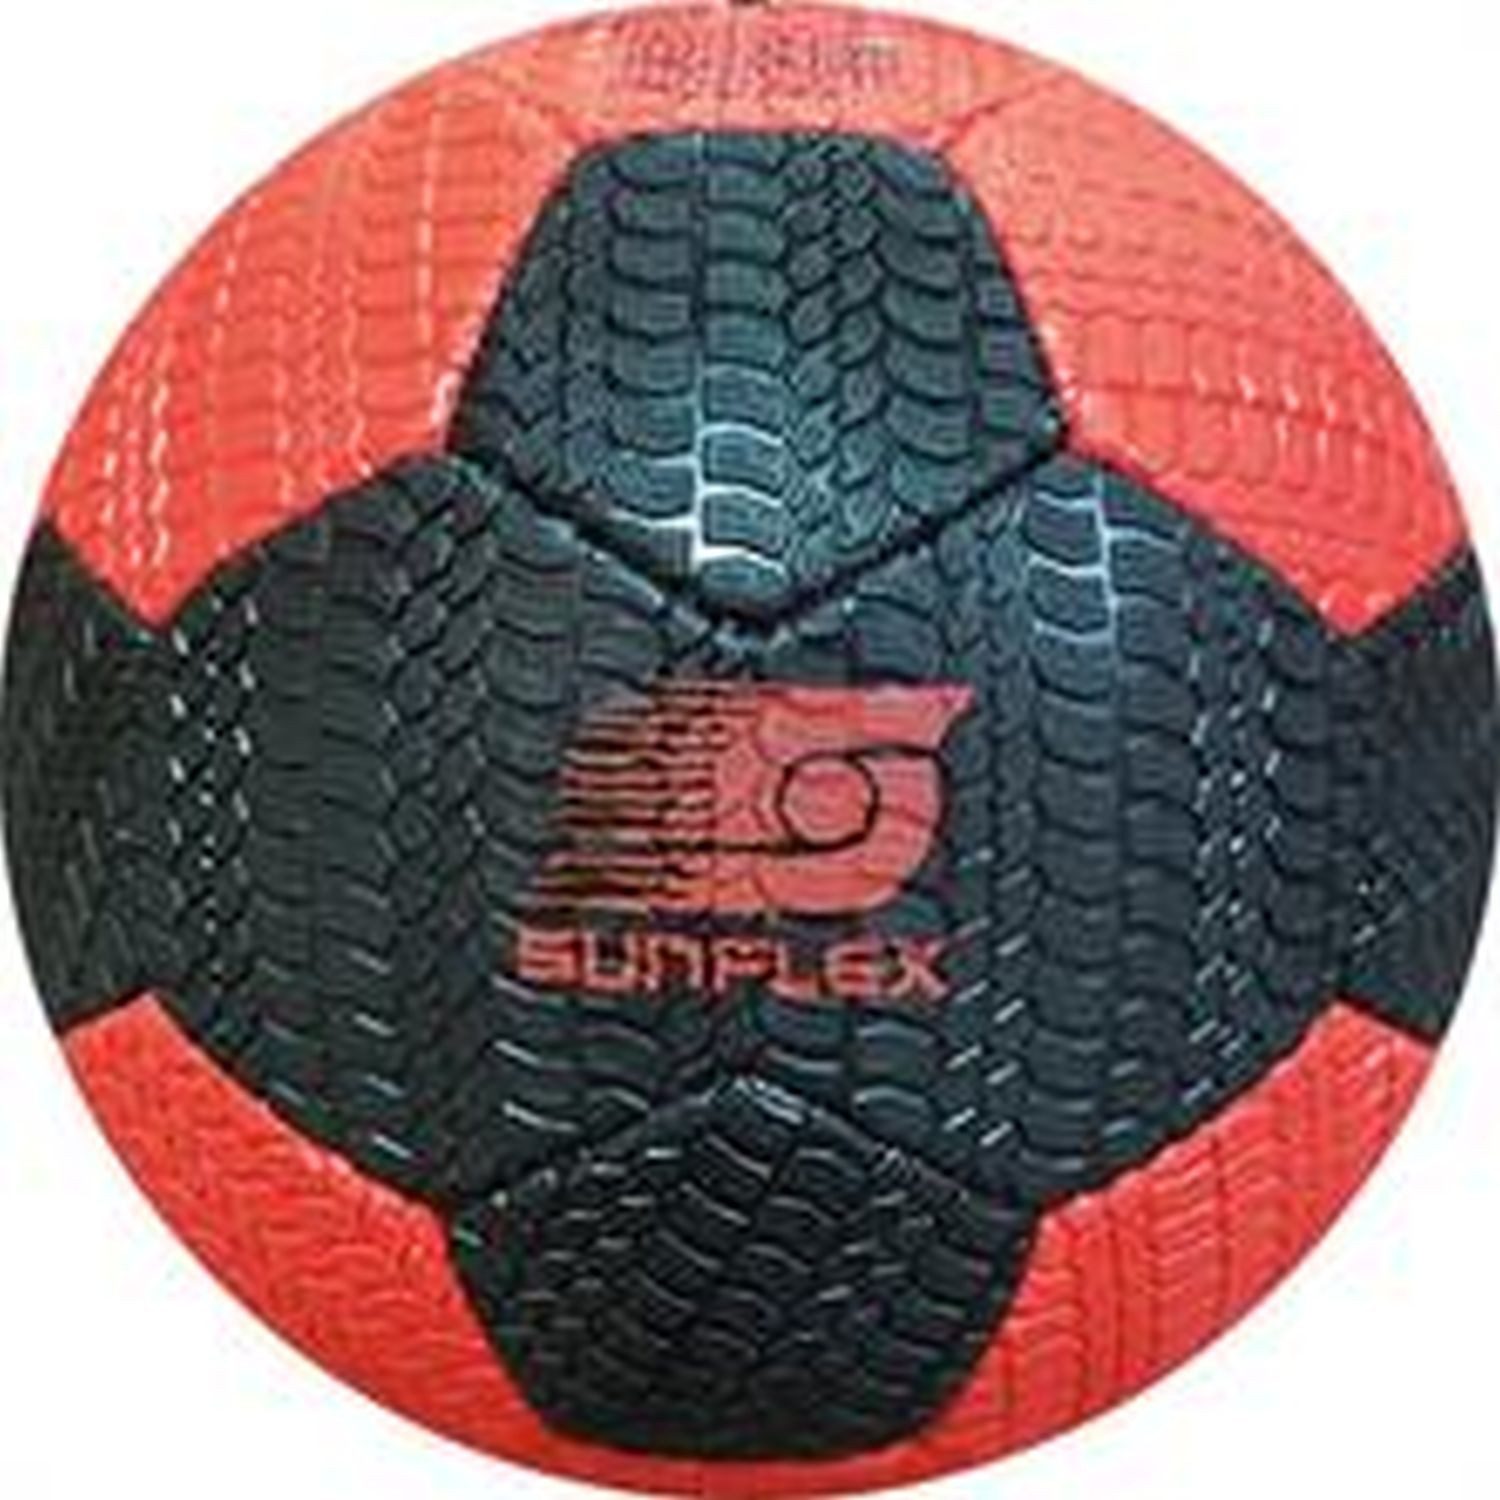 Sunflex Fußball Streetsoccerball, Ball Ballsport Ballspiel Sportspiel Sportball Soccer Soccerball